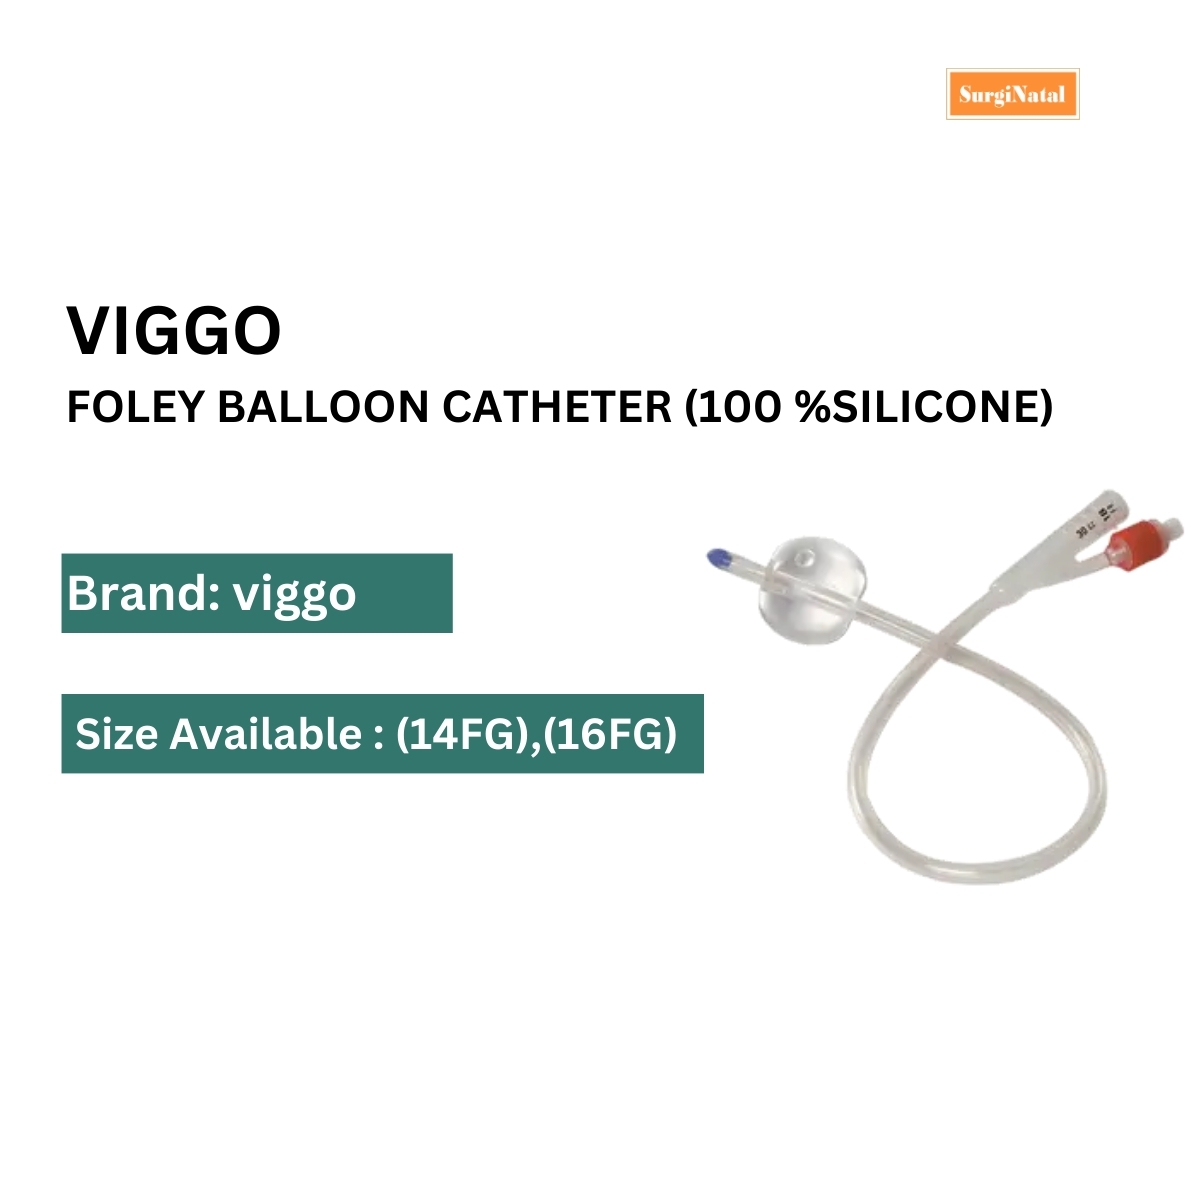 viggo foley balloon catheter (silicone)